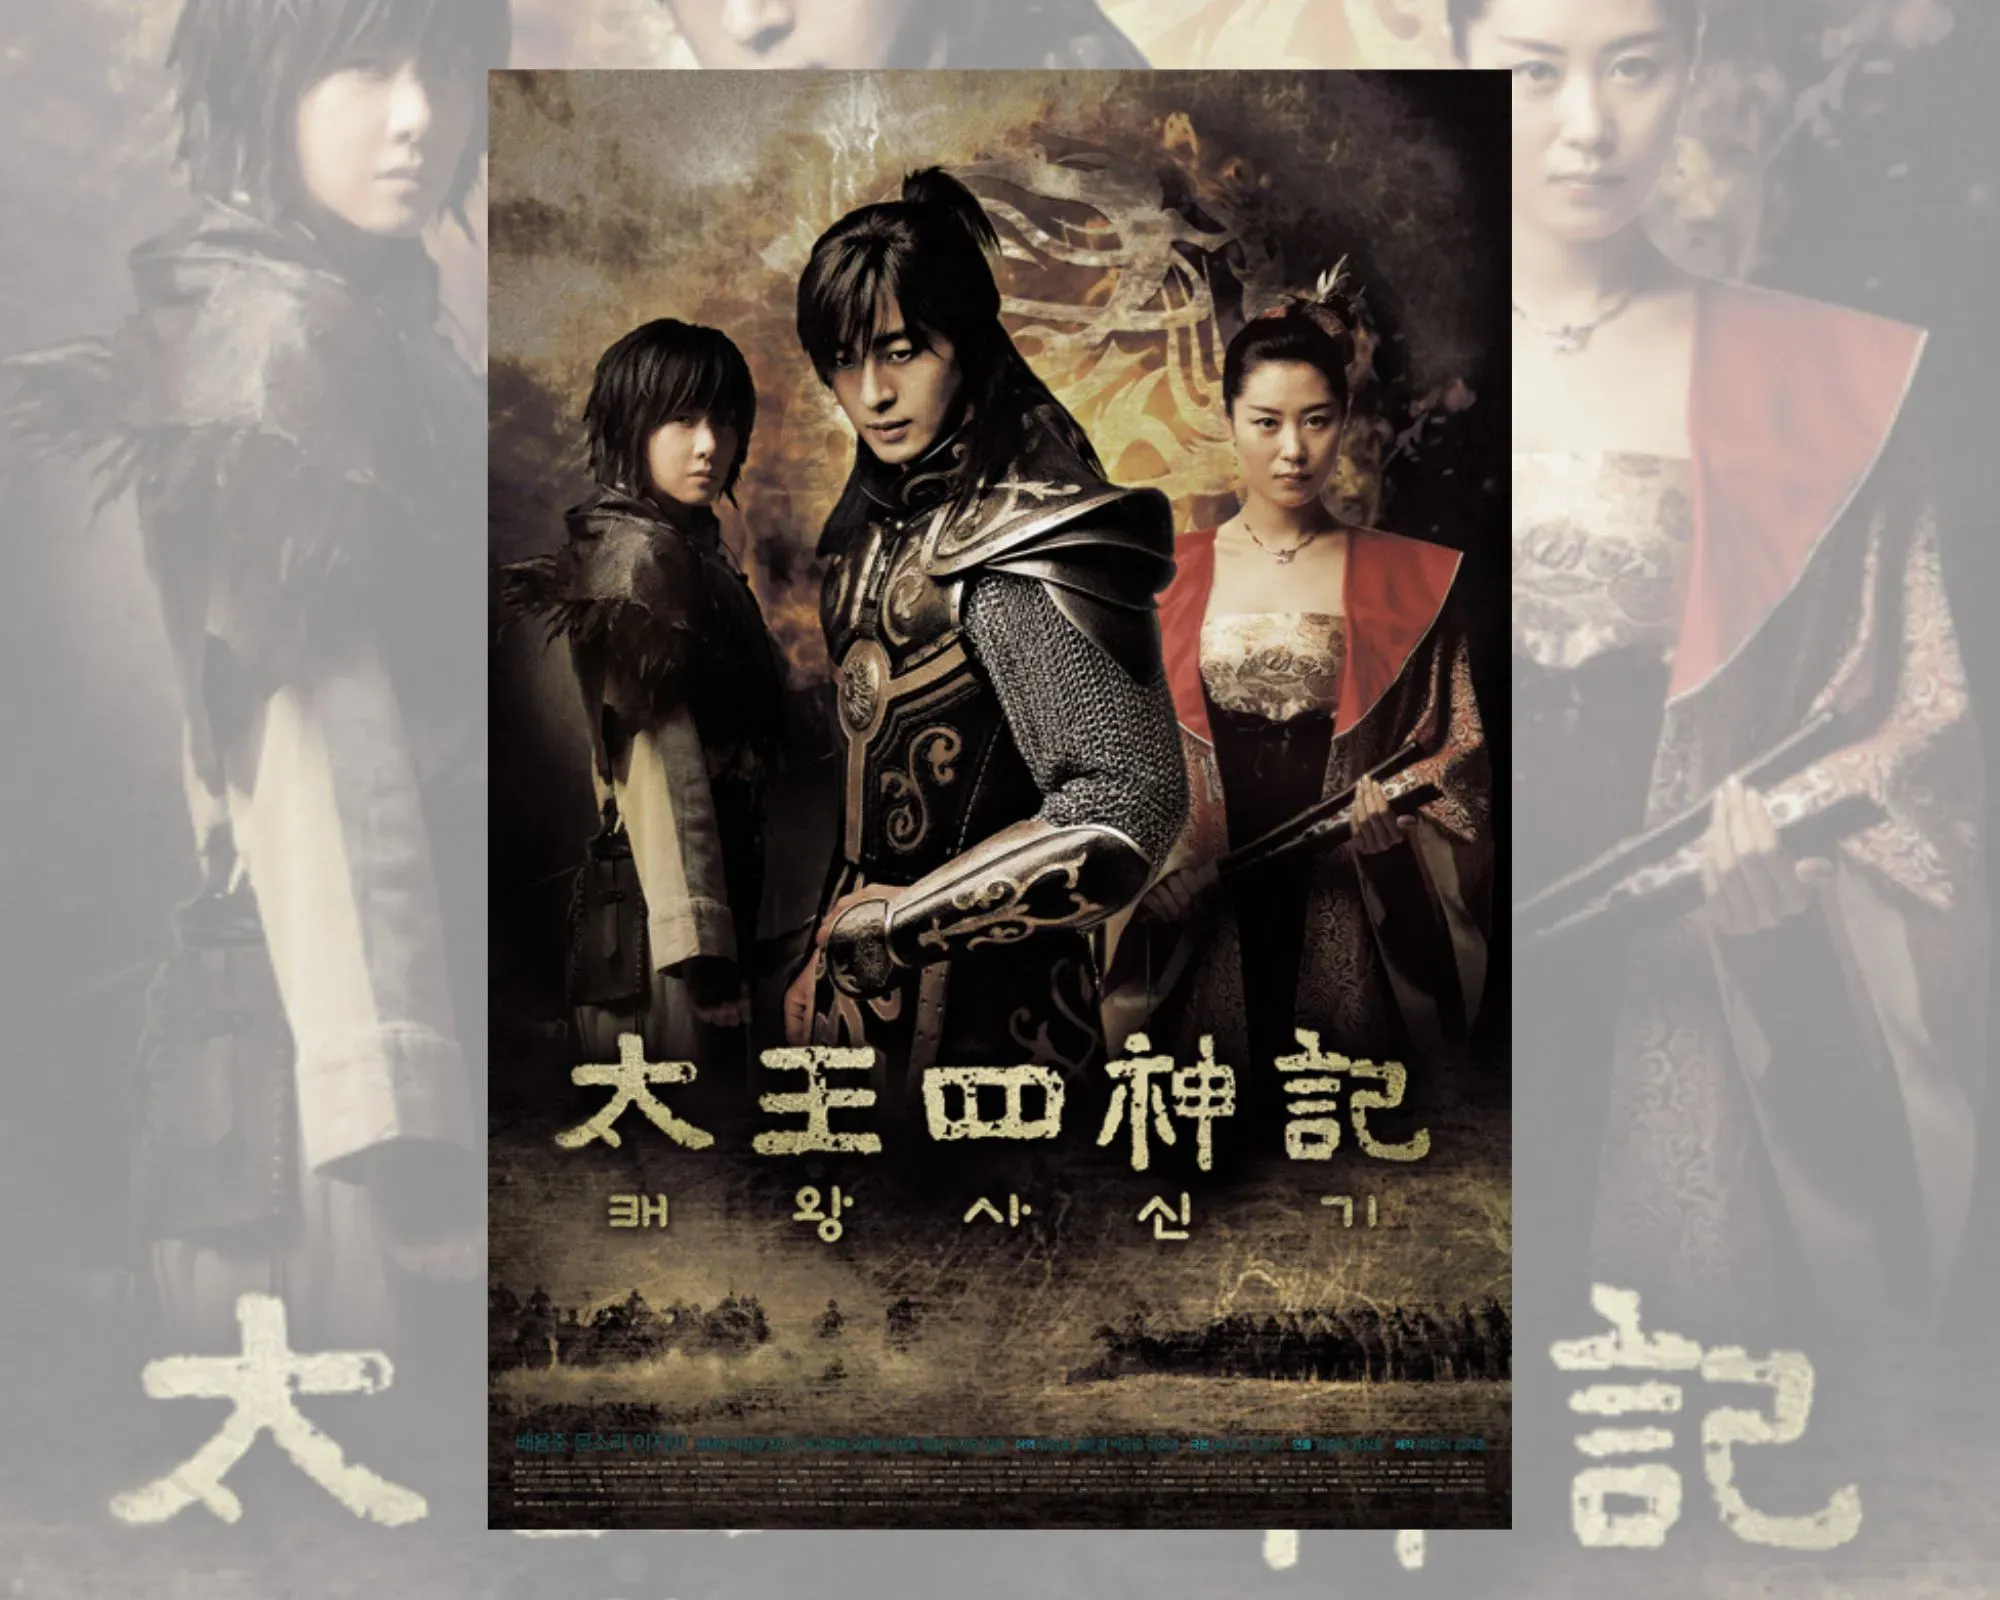 Постер на корейската драма “Легендата”, на който се виждат Дам-дук, Суджини и Ки-ха.